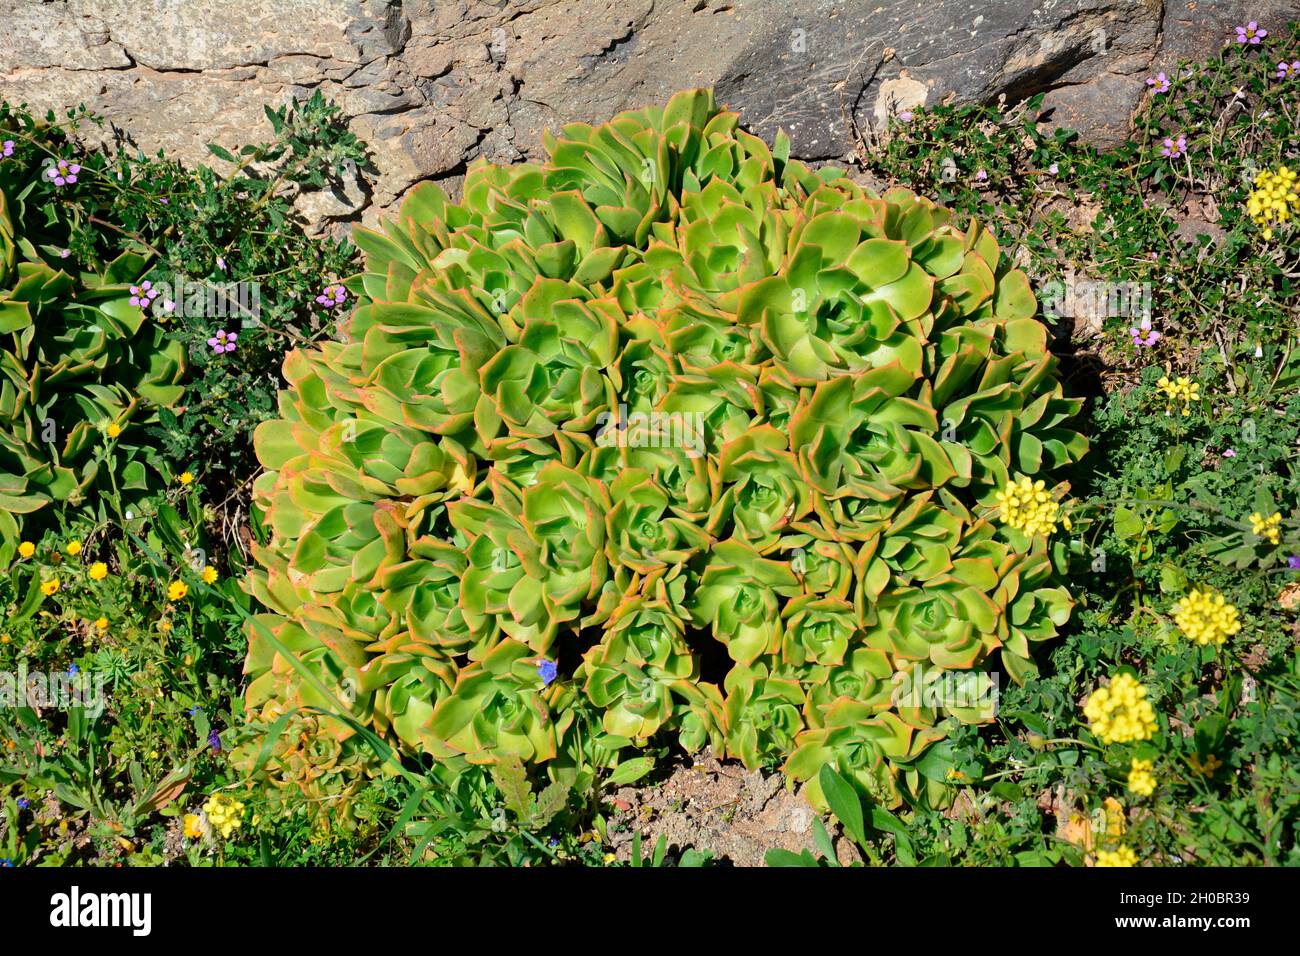 Lanzarote aeonium (Aeonium lancerottense) native to Lanzarote, Canary islands Stock Photo